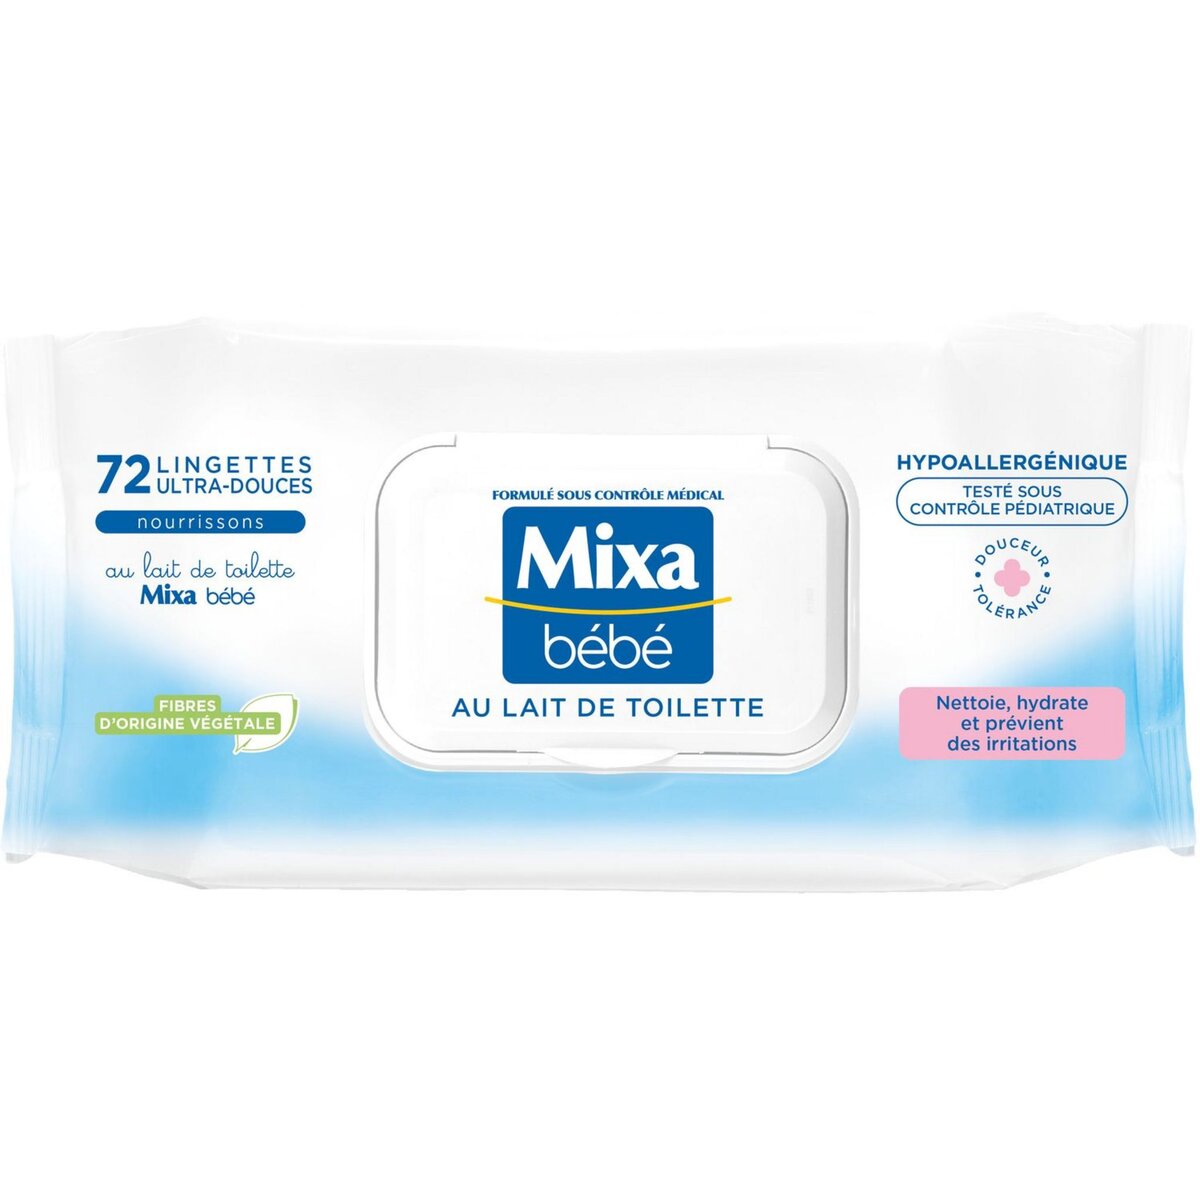 MIXA BEBE Lingettes bébé ultra-douces au lait nettoyant et apaisant 72 lingettes